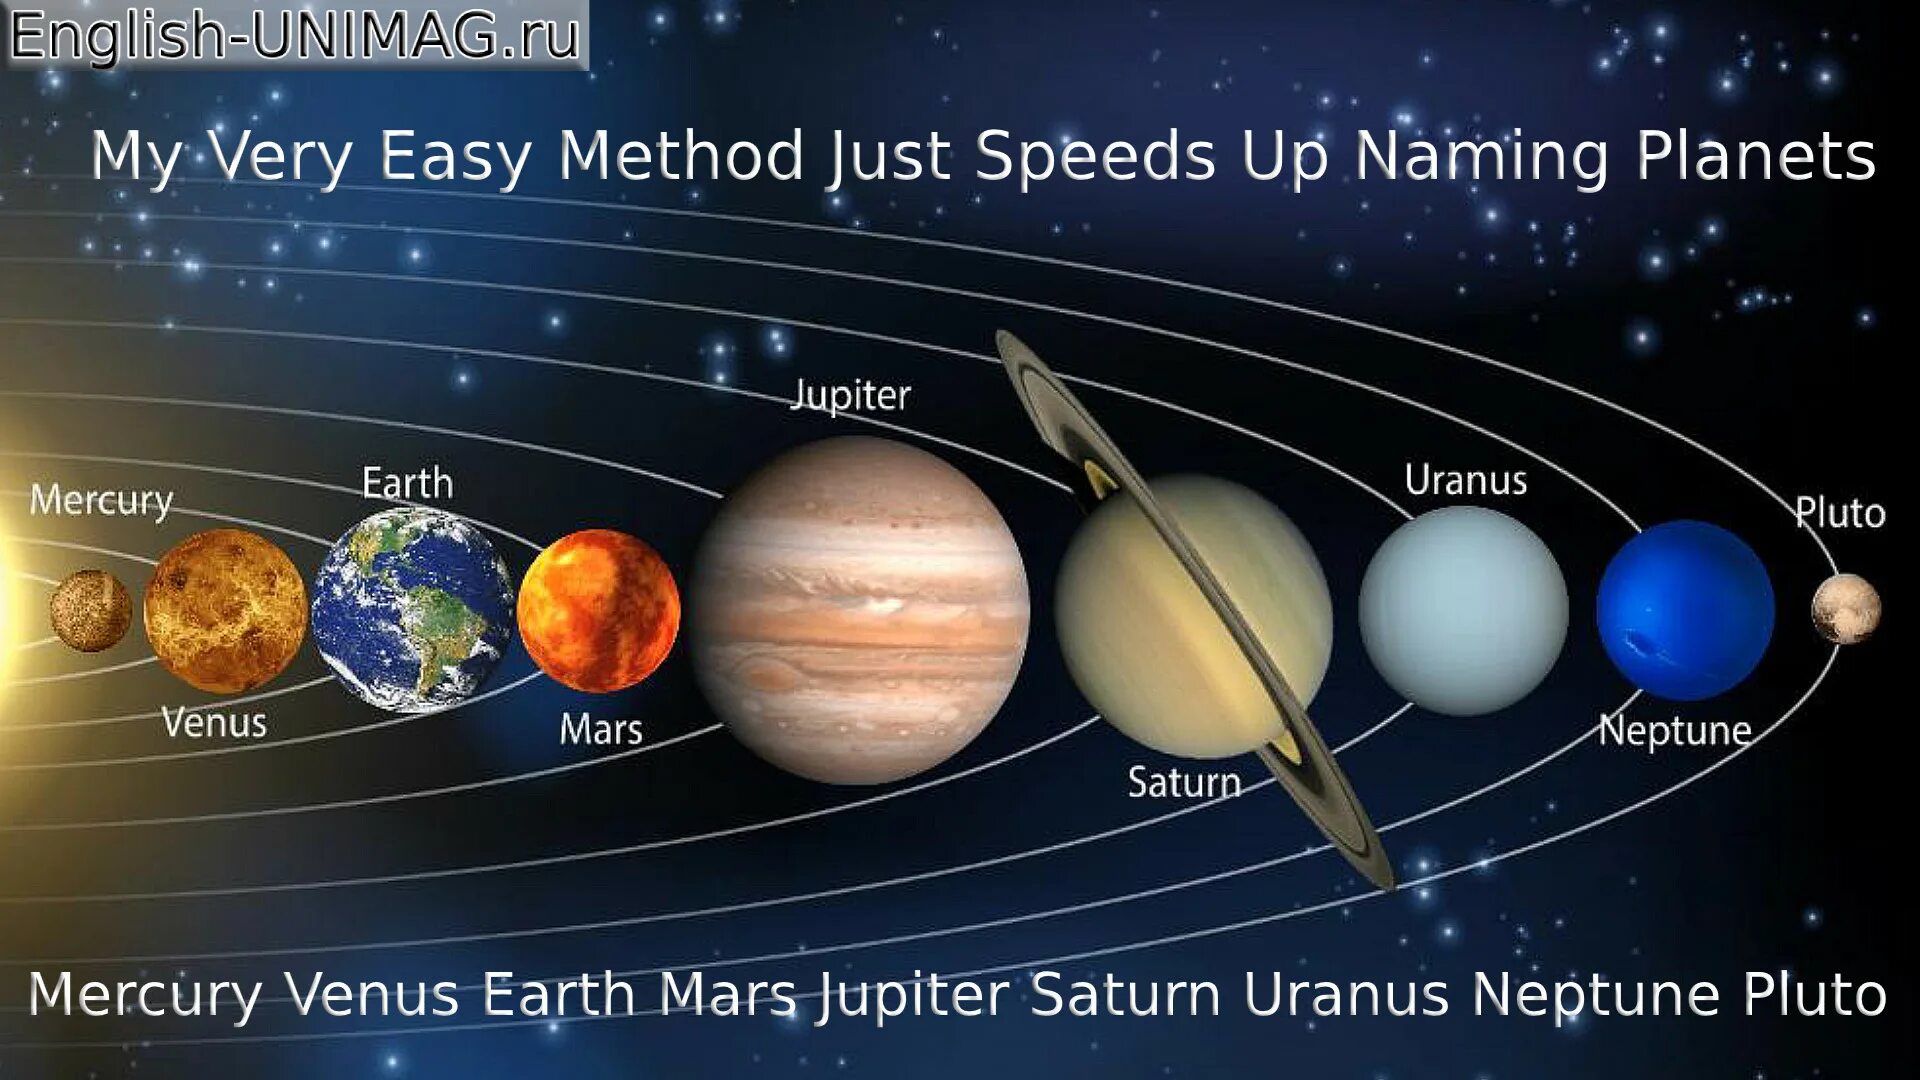 Название планет солнечной системы по порядку. Солнечная система Планетная система. Расположение планет солнечной системы по порядку. Солнечная система с названиями планет по порядку от солнца.